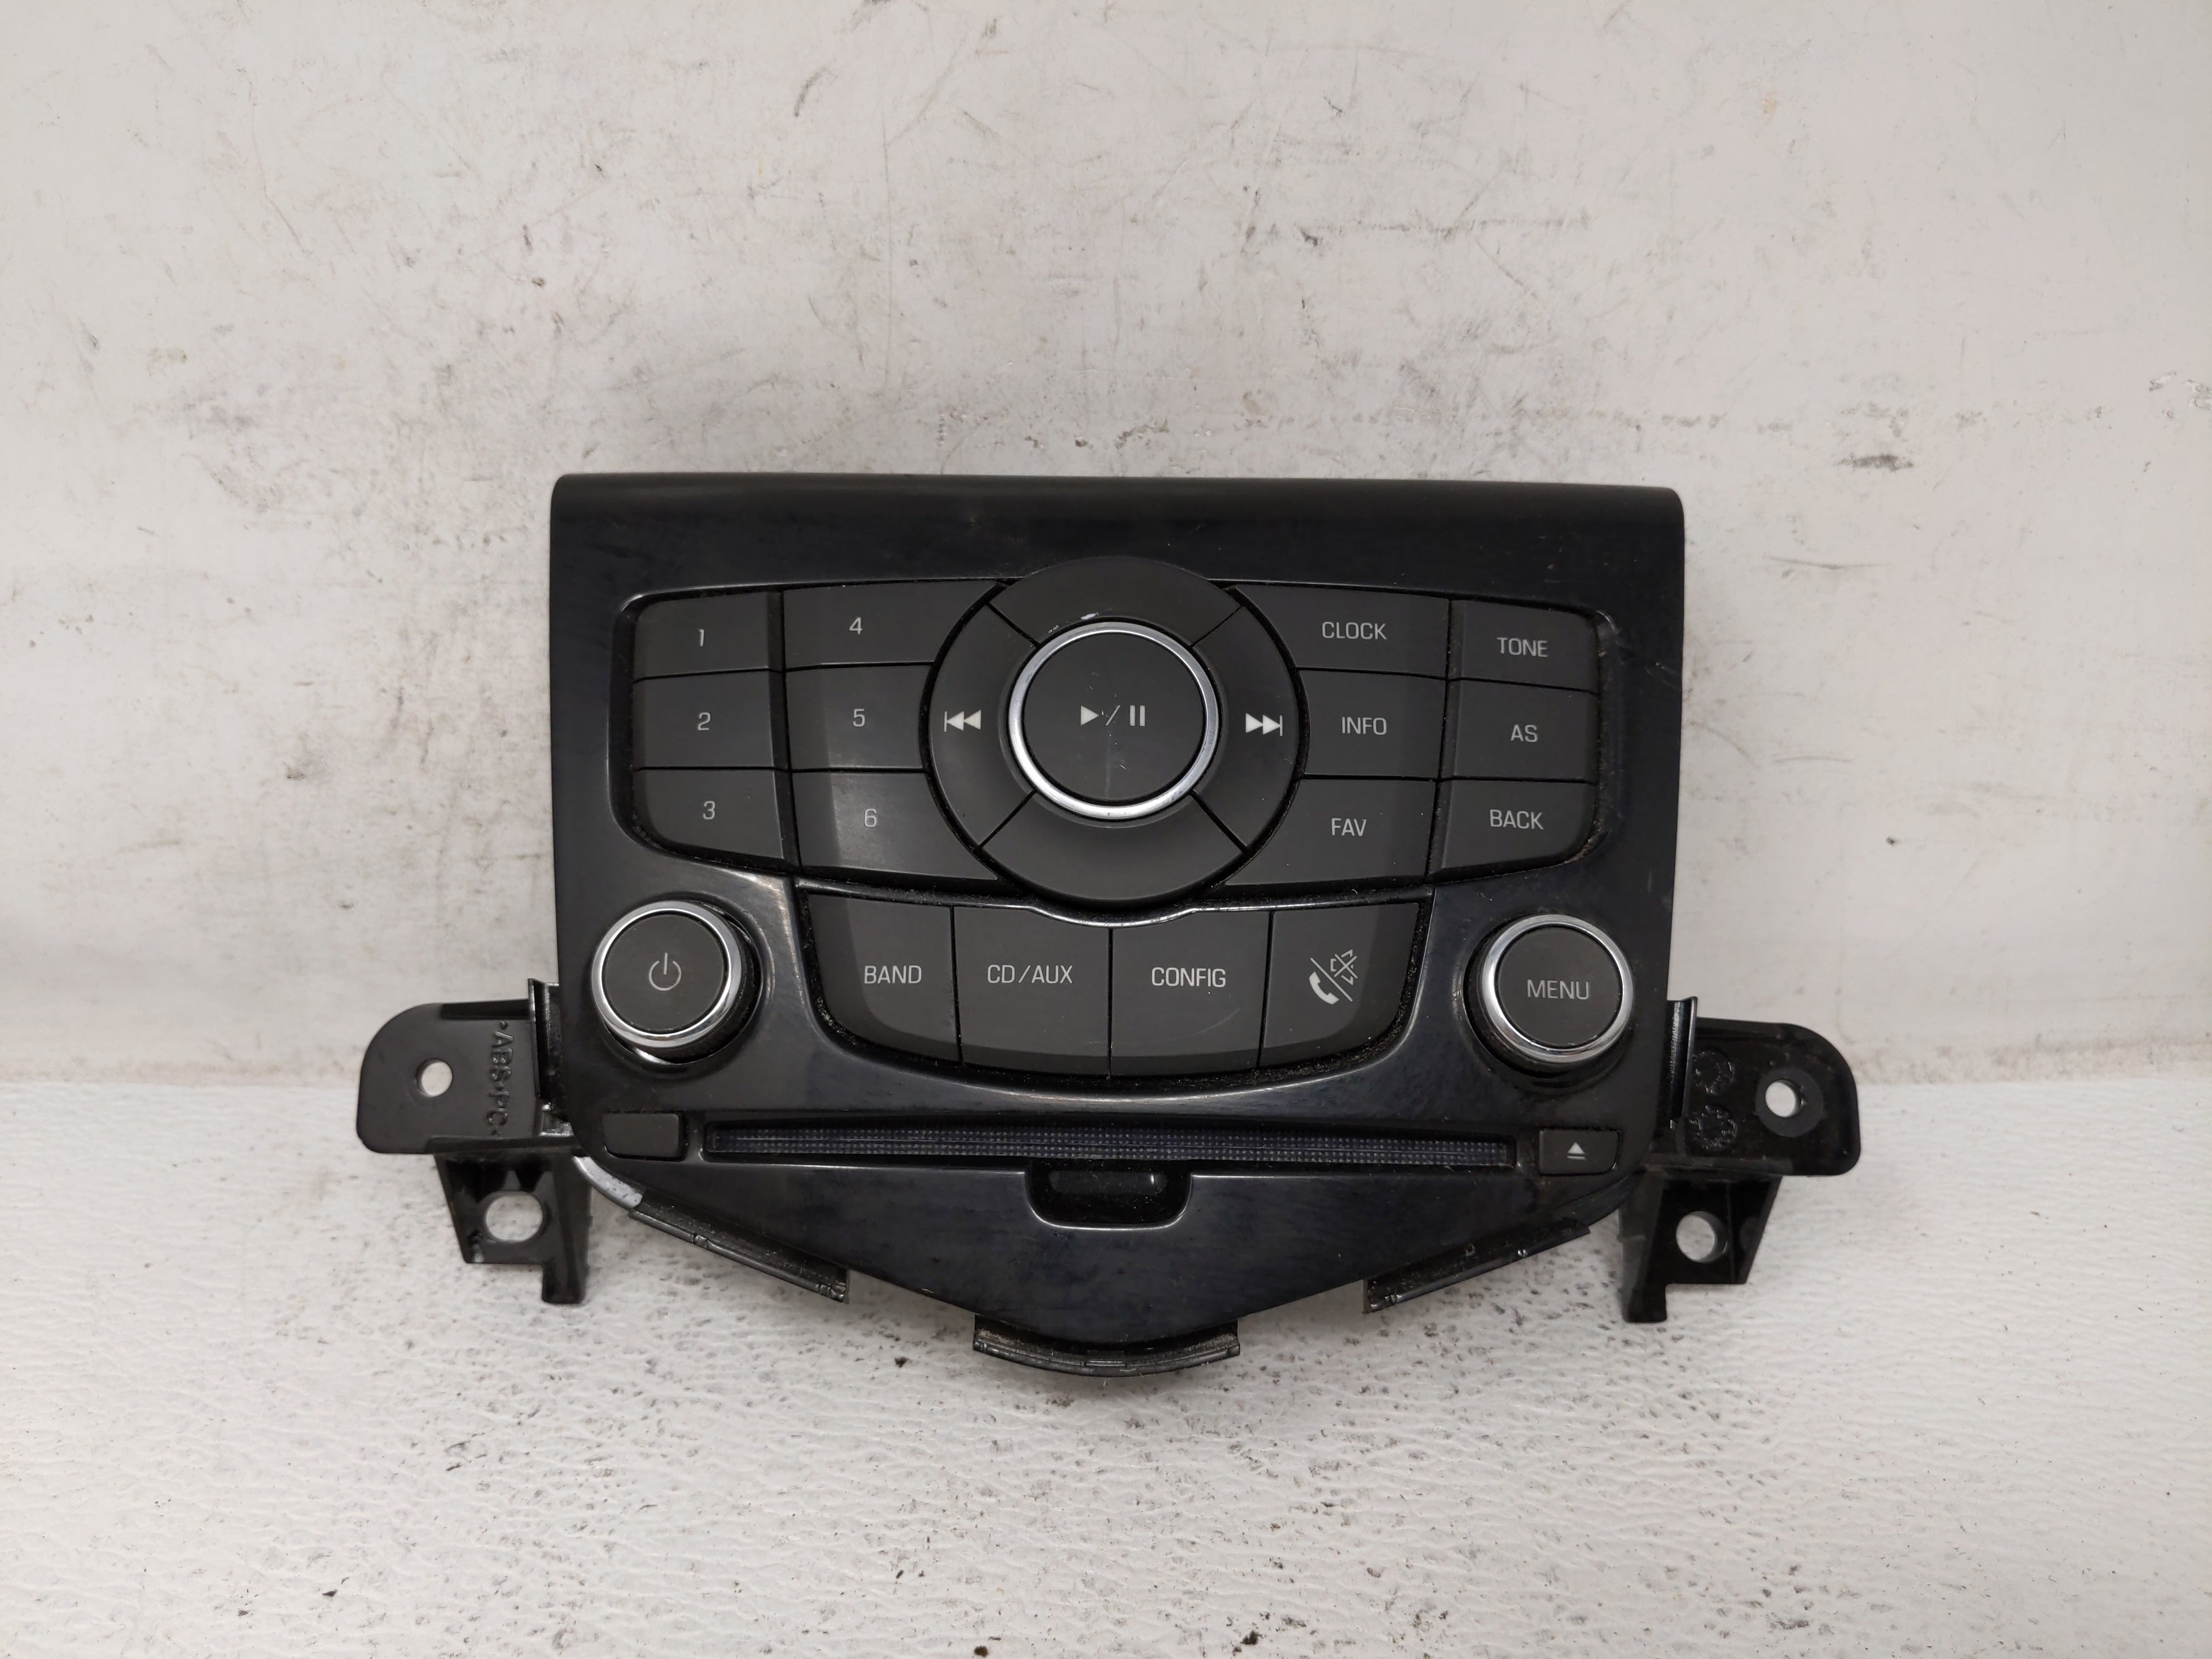 2011 Chevrolet Cruze Radio Control Panel - Oemusedautoparts1.com